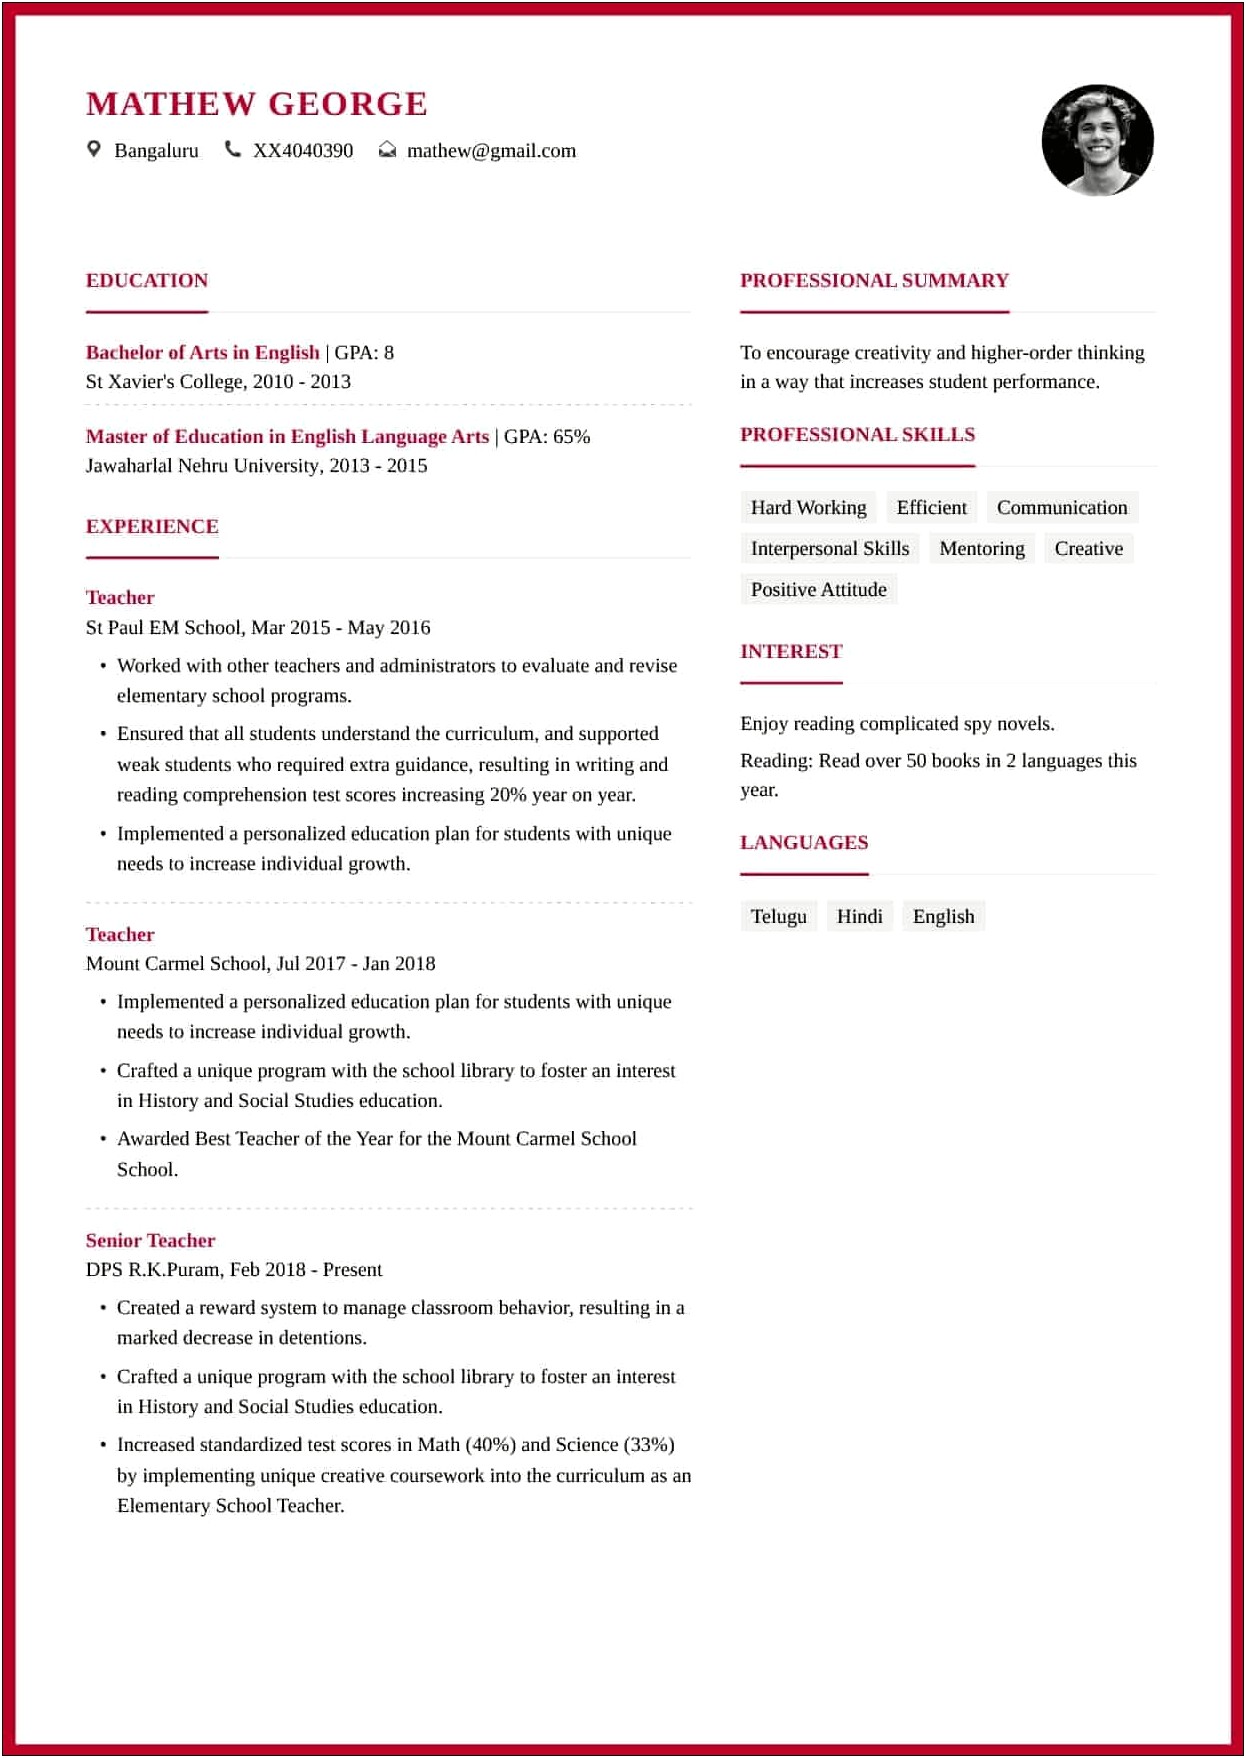 Resume Format For School Teacher Pdf